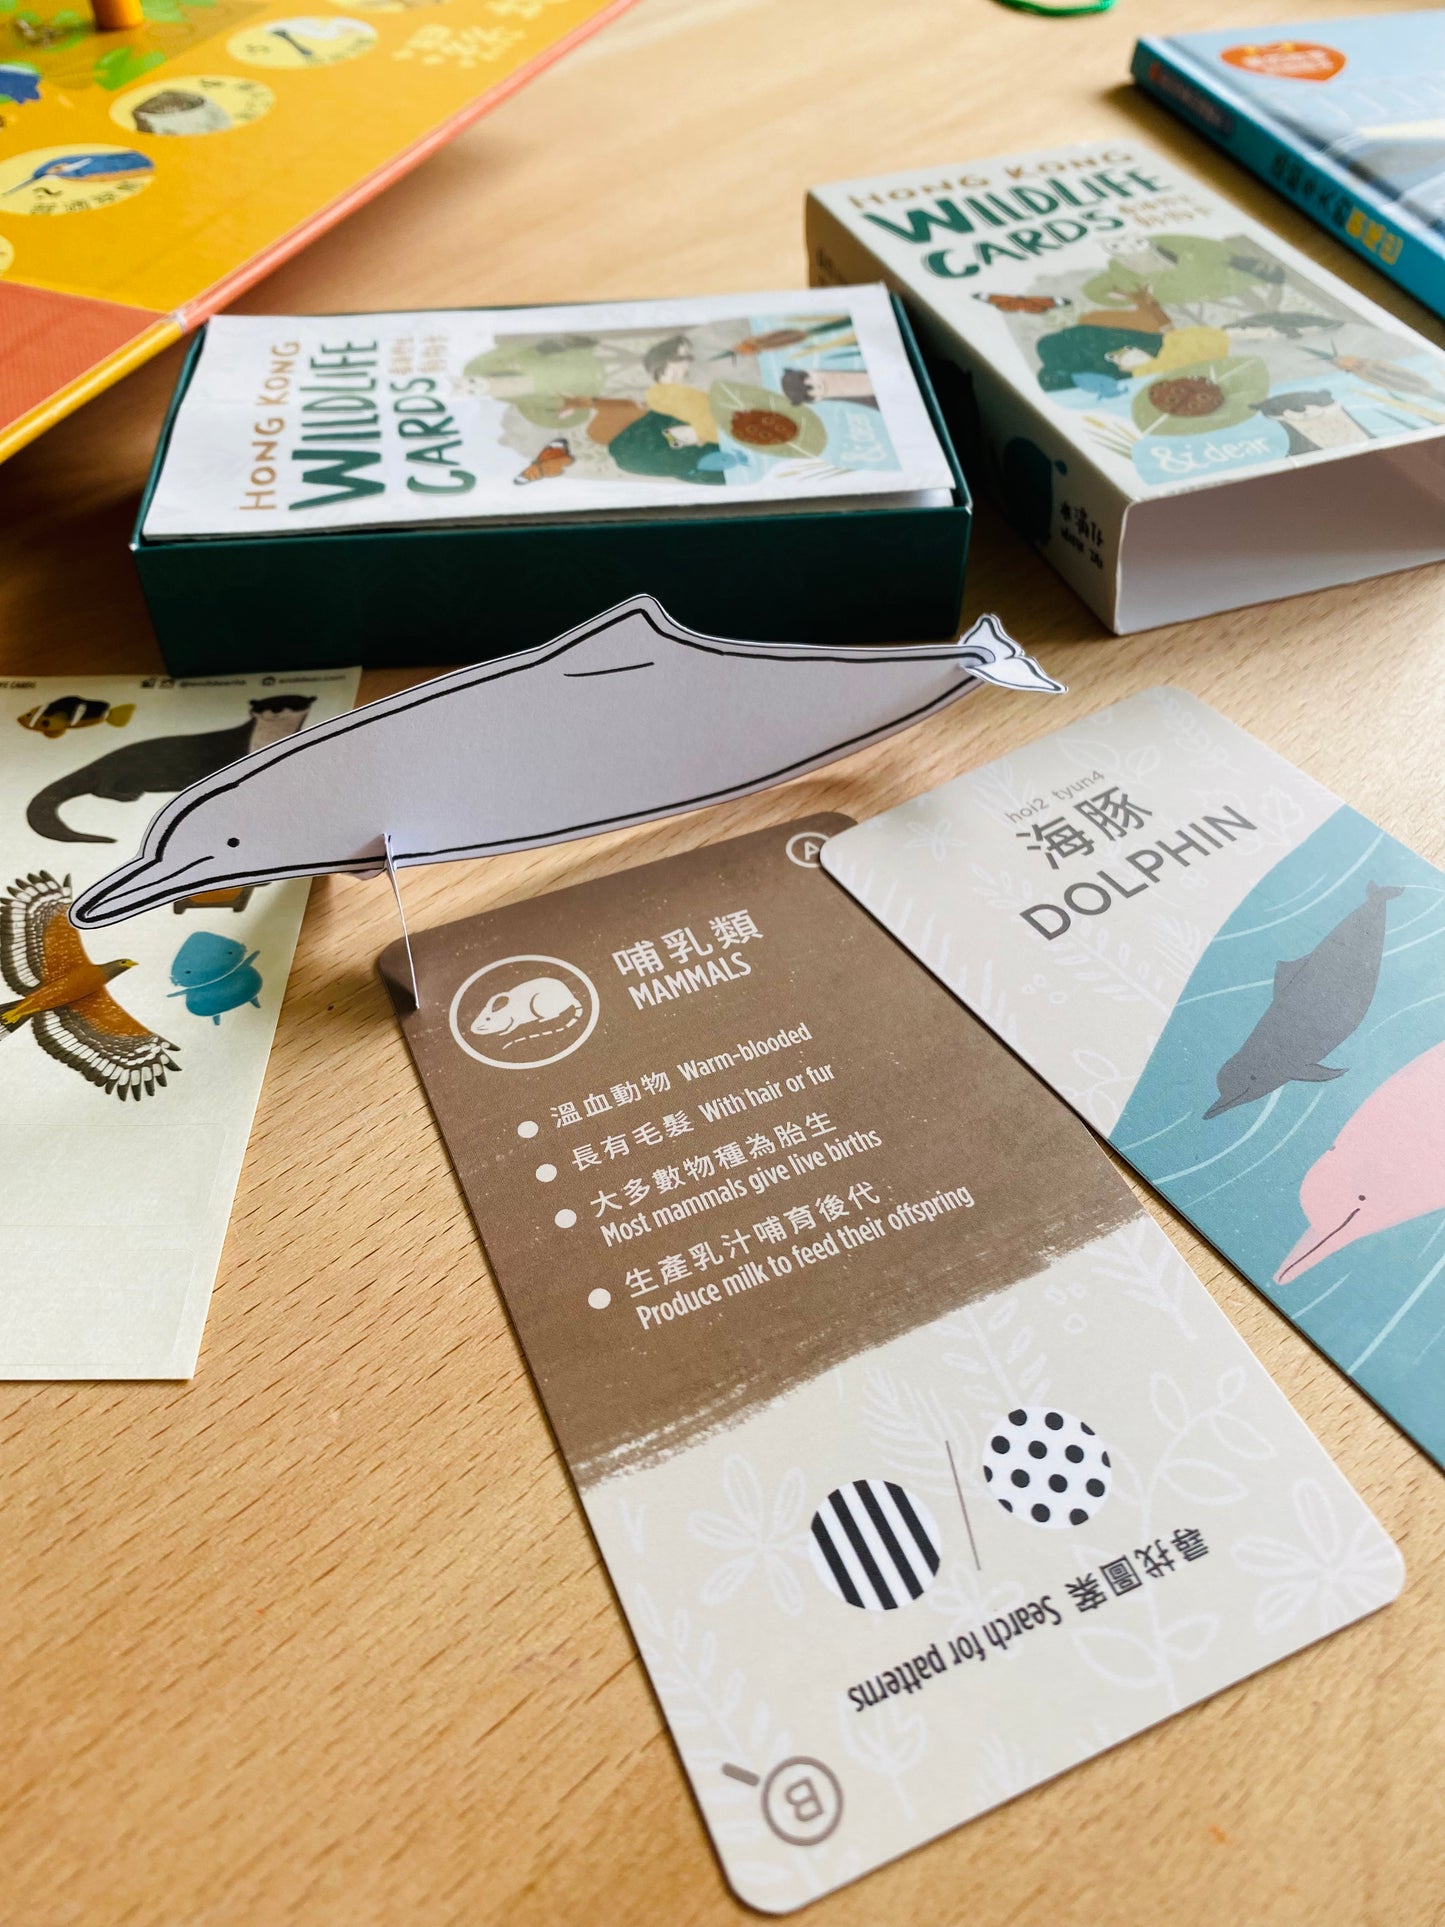 香港野生動物卡 Hong Kong Wildlife Cards（中英對照）